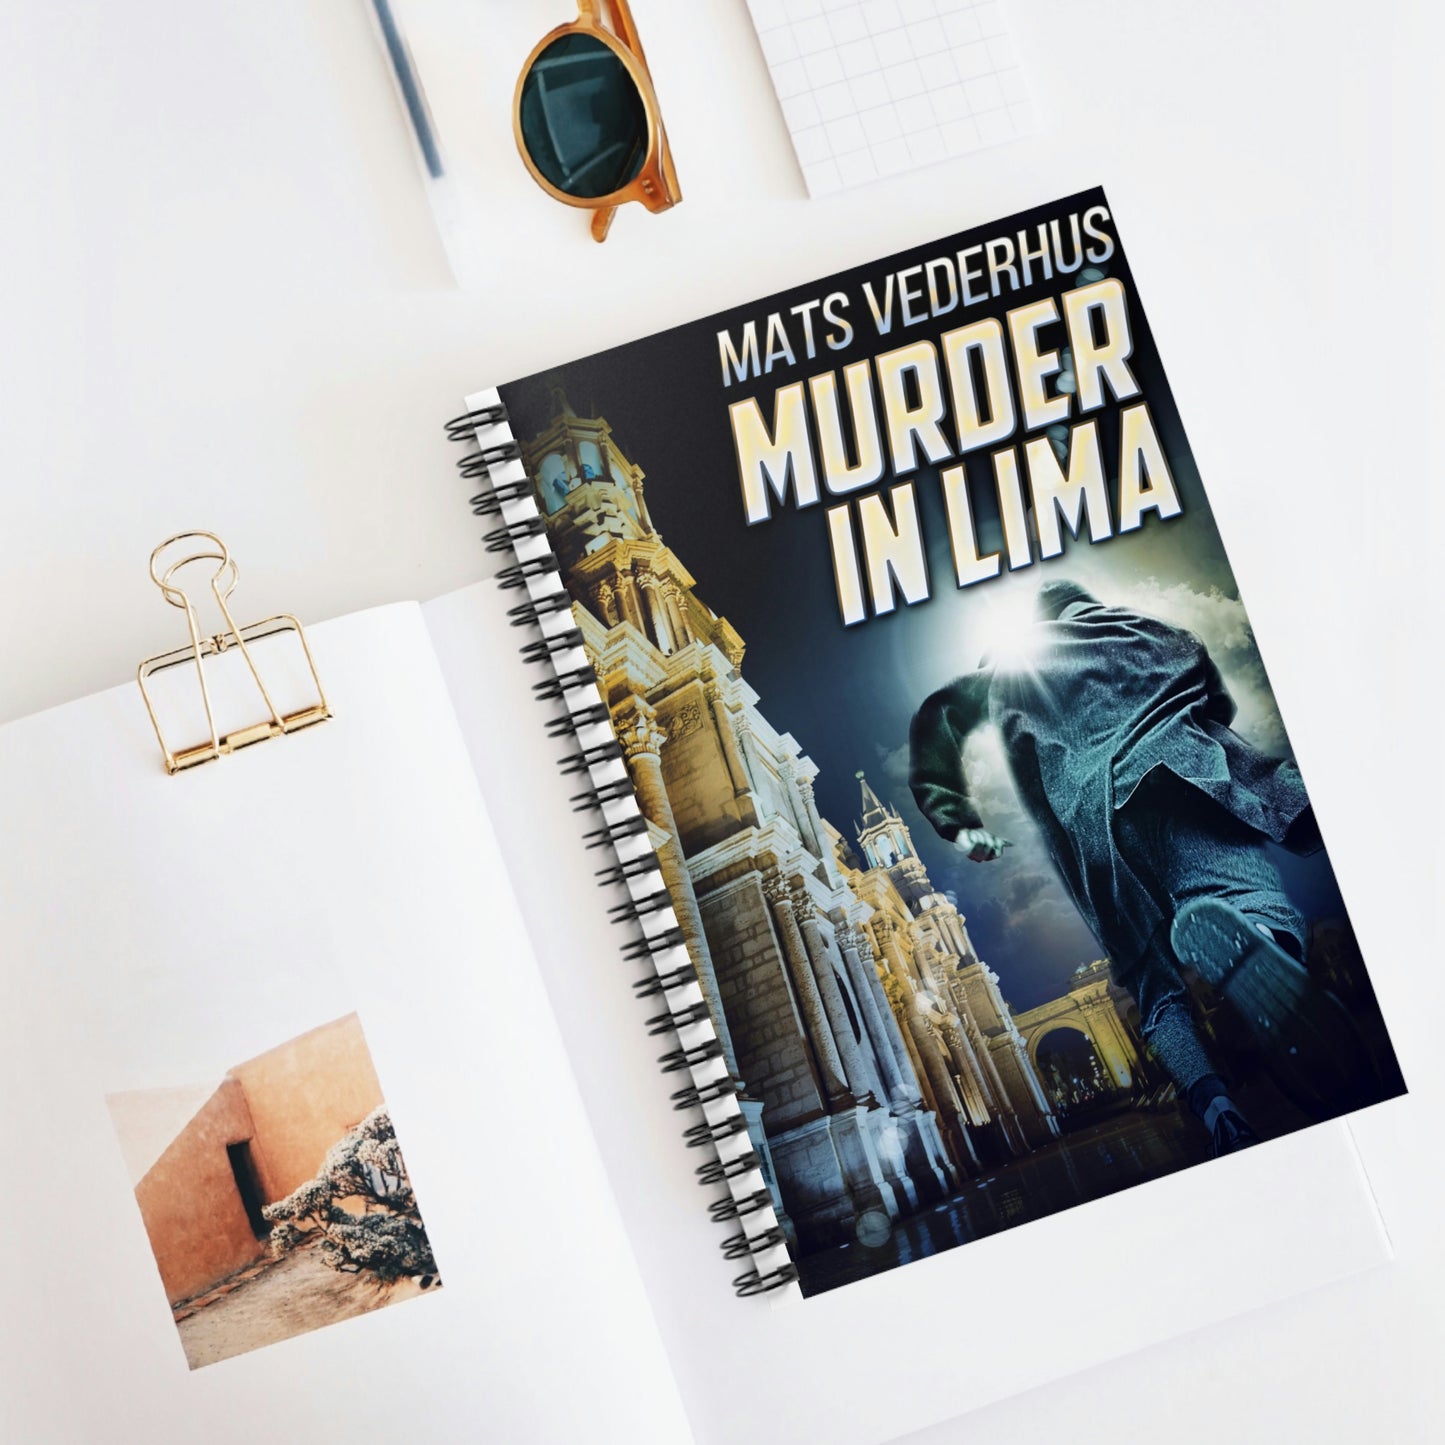 Murder In Lima - Spiral Notebook